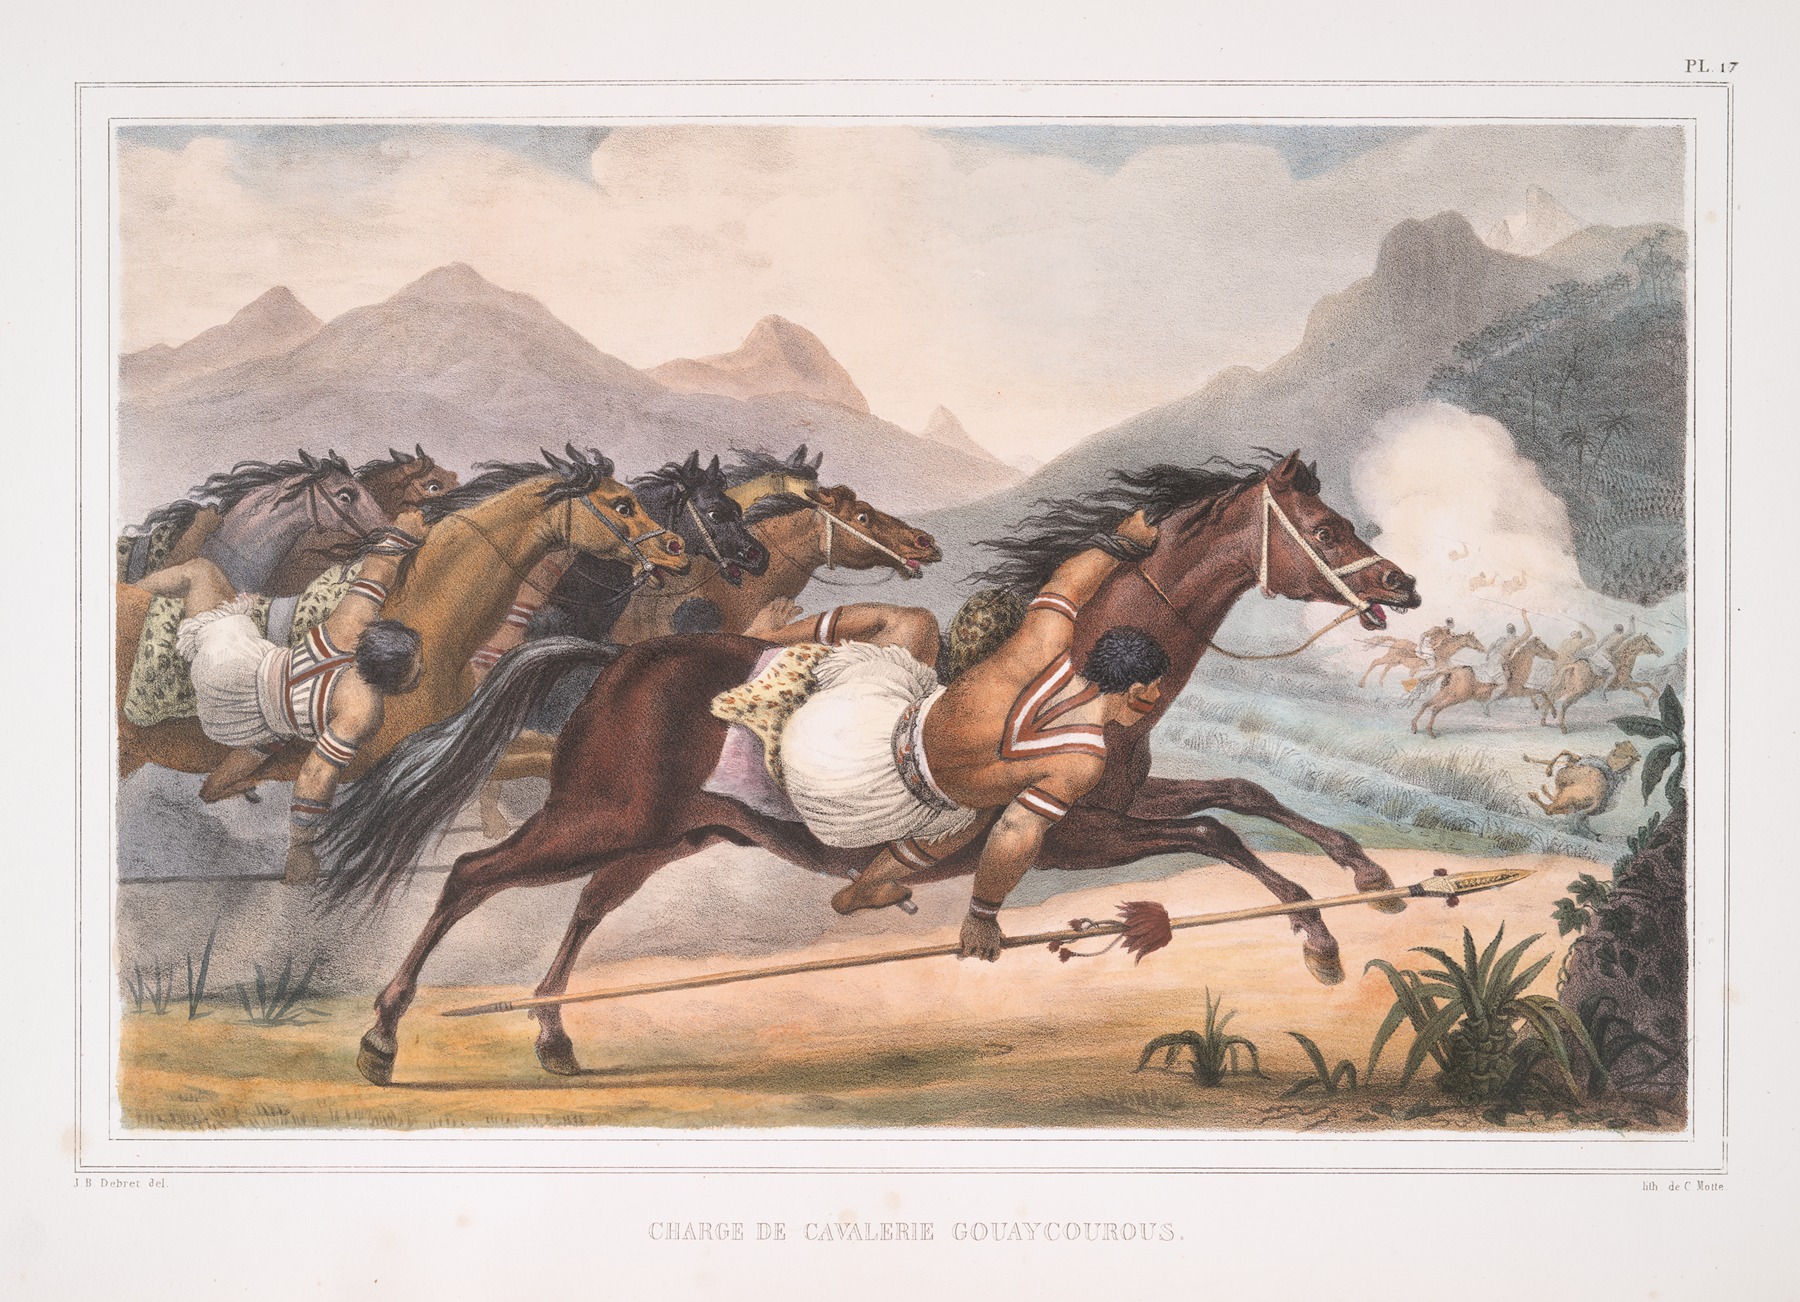 Jean Baptiste Debret - Charge de cavalerie Gouaycourous